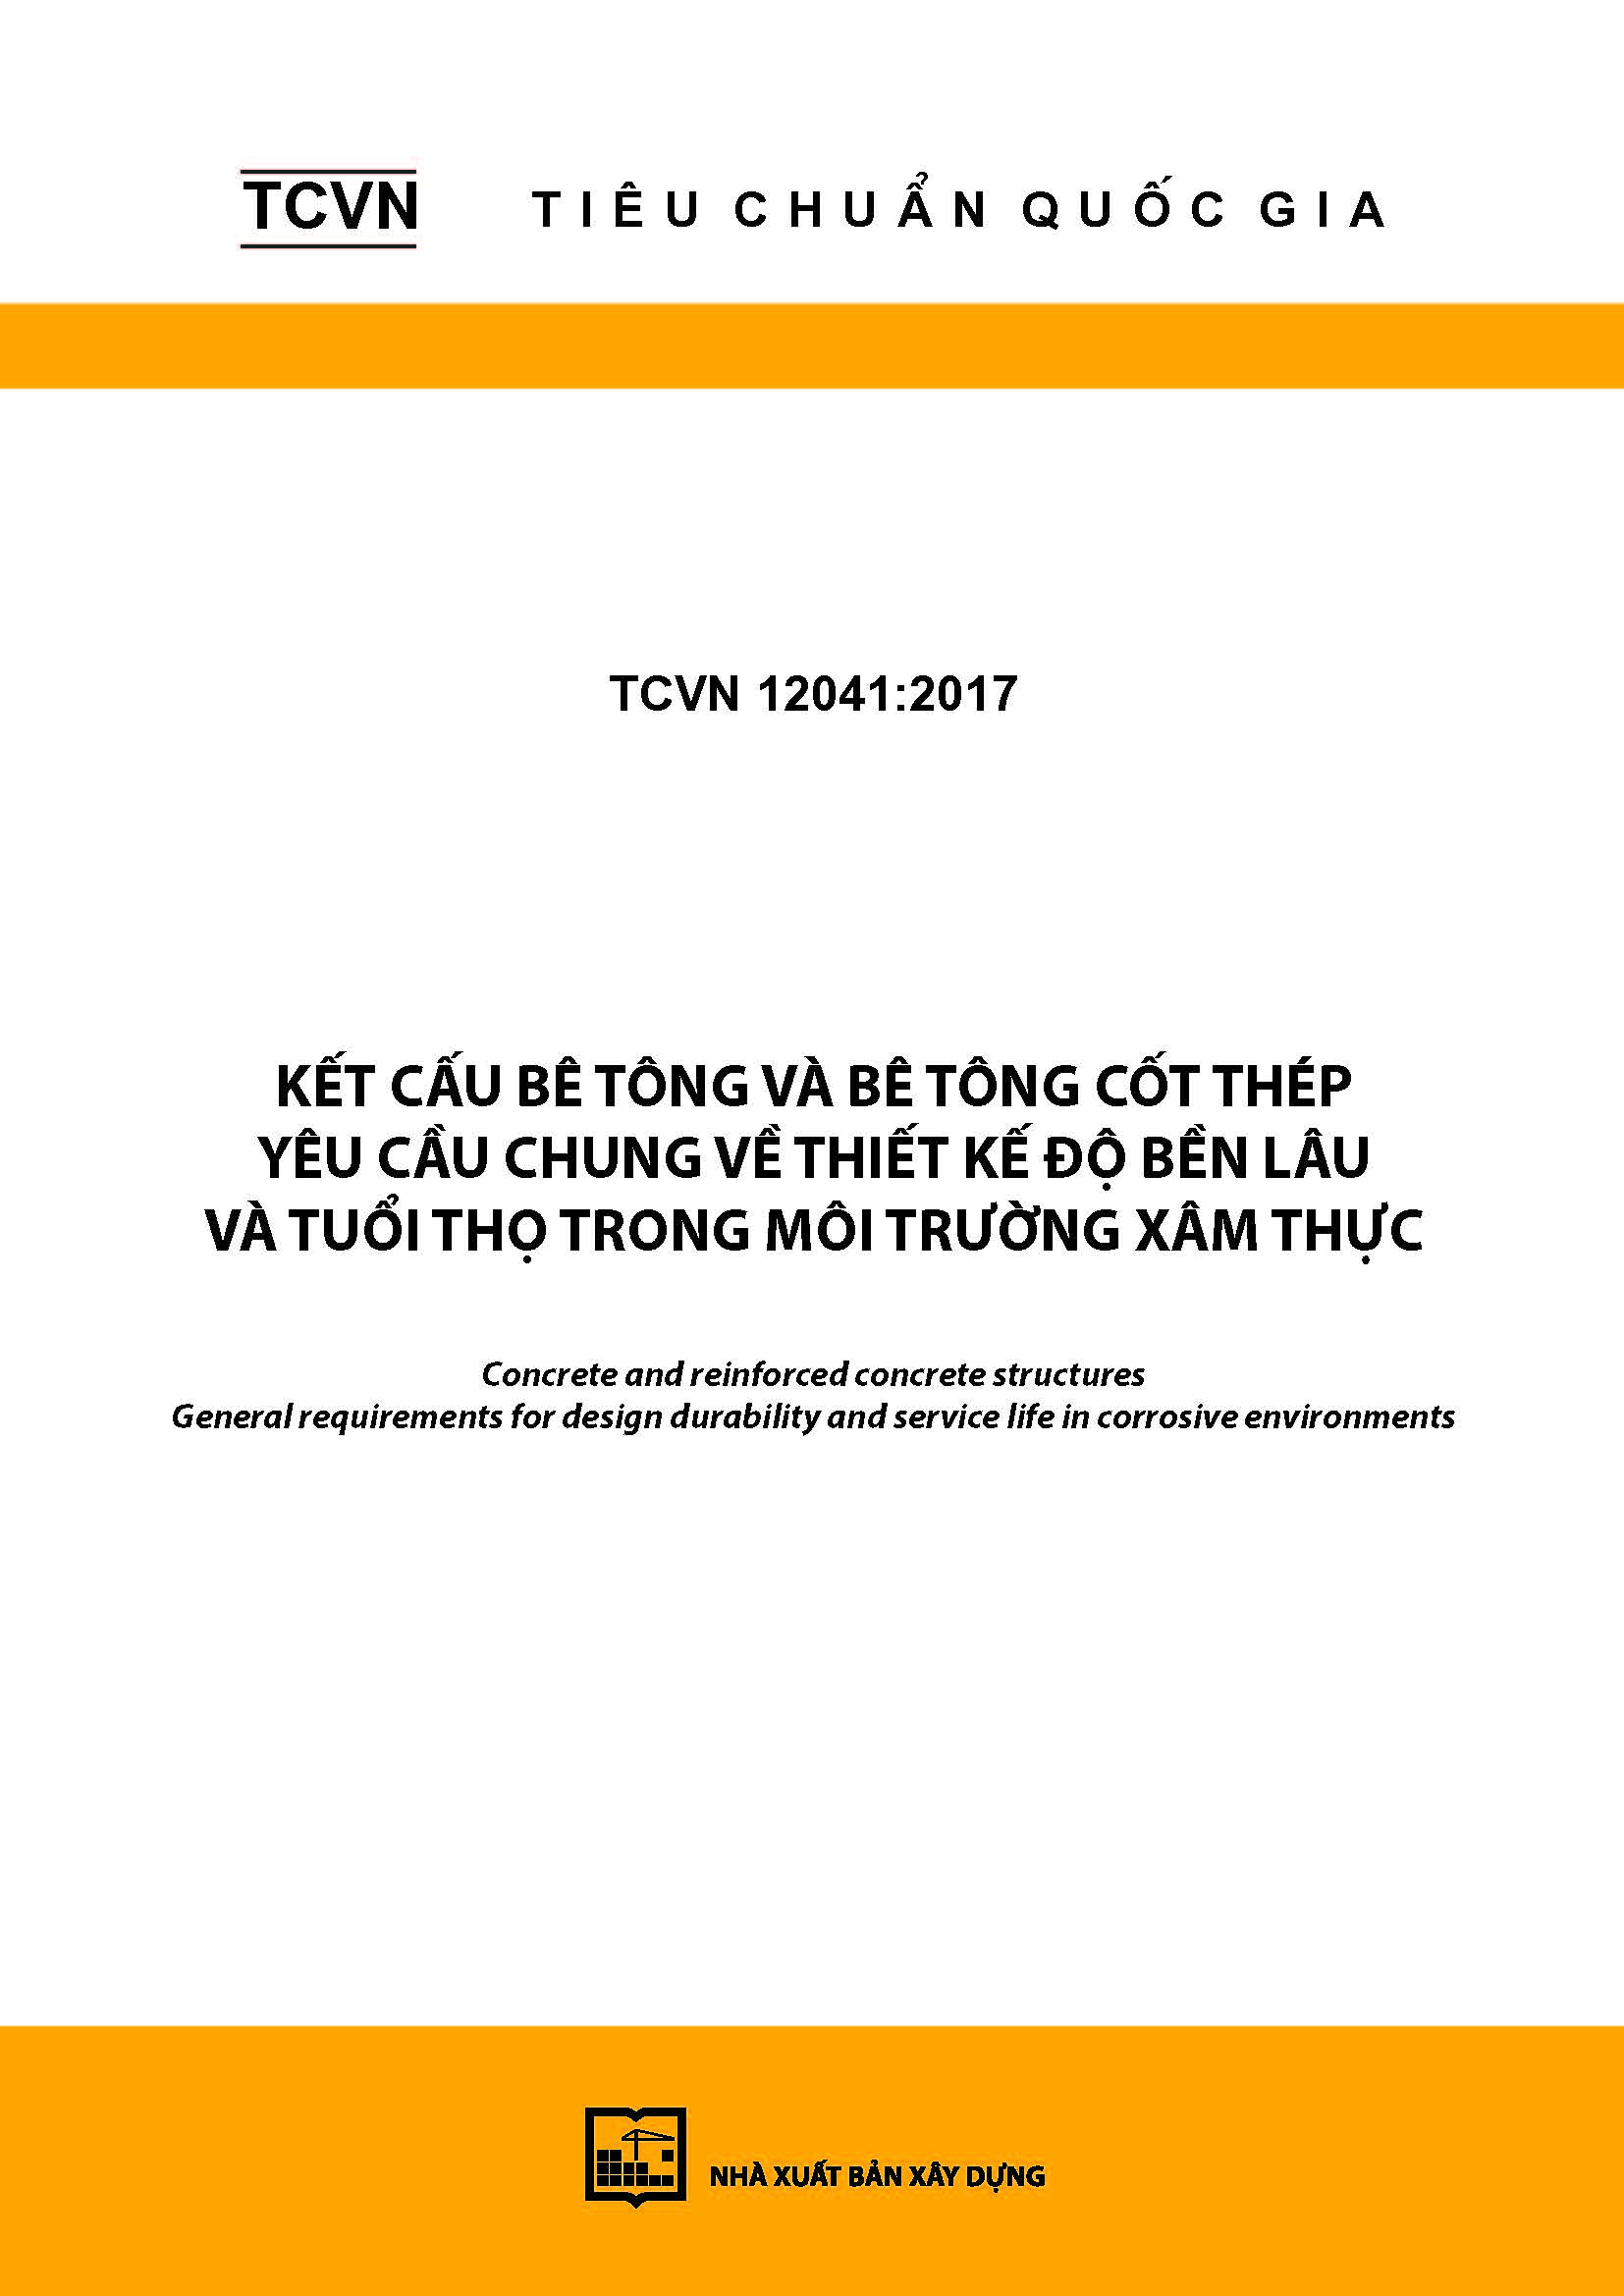 TCVN 12041:2017 Kết cấu bê tông và bê tông cốt thép - Yêu cầu chung về thiết kế độ bền lâu và tuổi thọ trong môi trường xâm thực - Concrete and reinforced concrete structures - General requirements for design durability and service life in corrosive environments